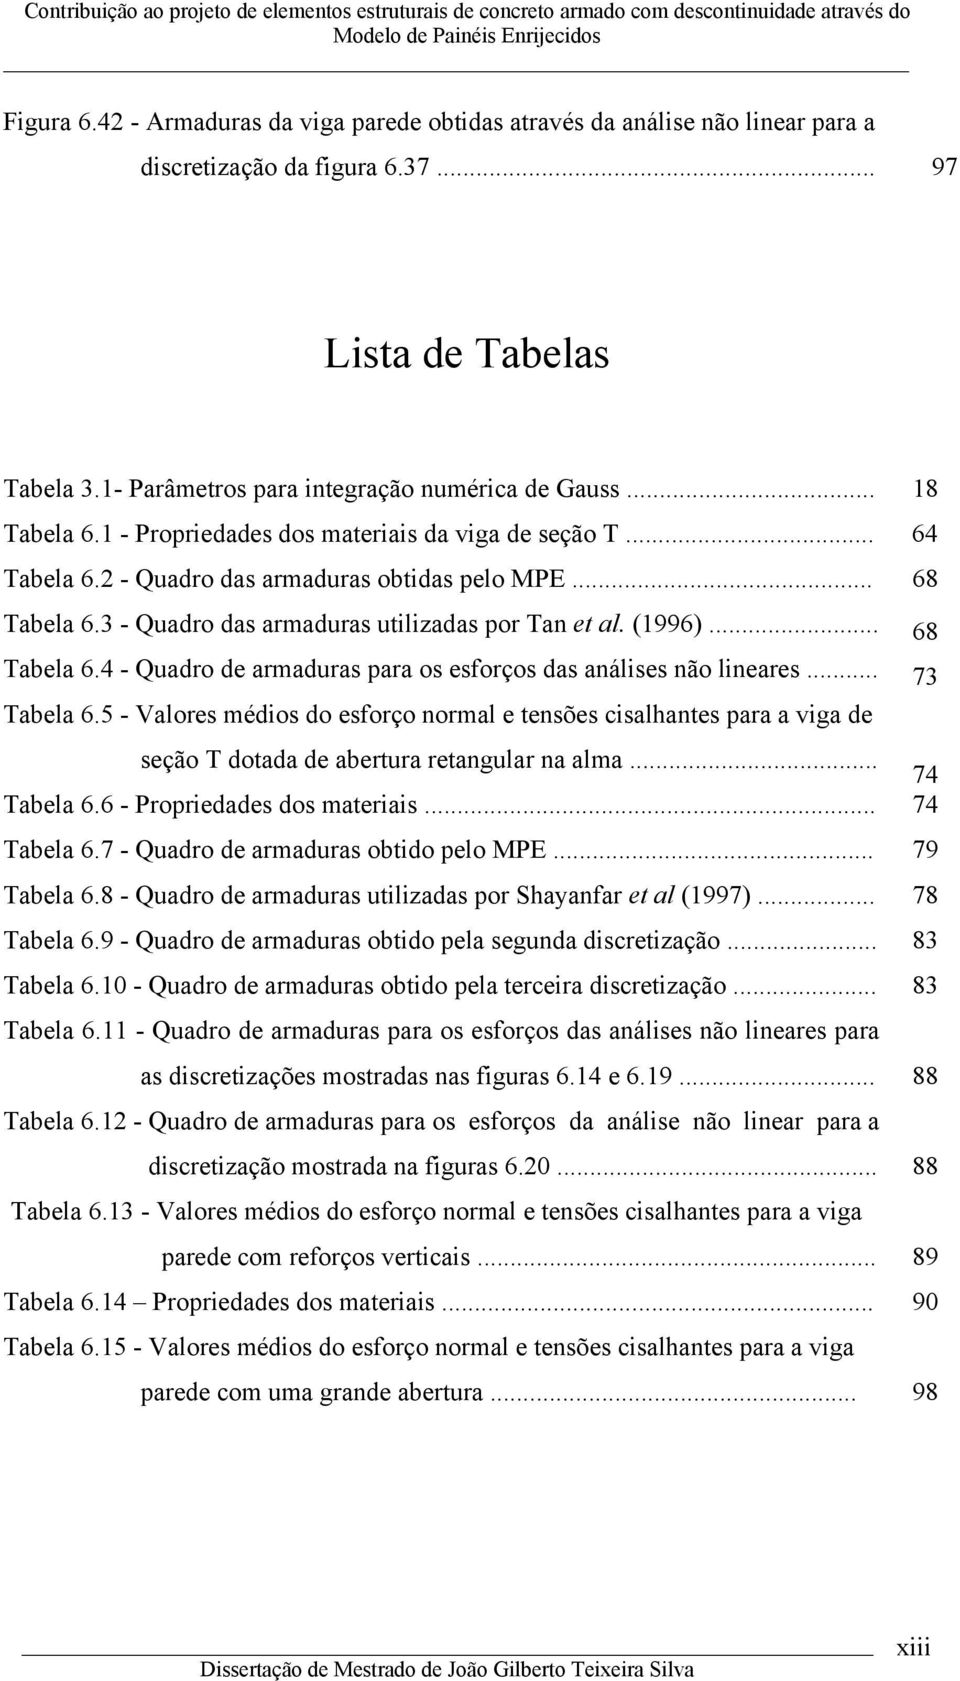 .. 7 Tabela 6.5 - Valores médios do esforço normal e tensões isalhantes para a viga de seção T dotada de abertura retangular na alma... 7 Tabela 6.6 - Propriedades dos materiais... 7 Tabela 6.7 - Quadro de armaduras obtido pelo MPE.